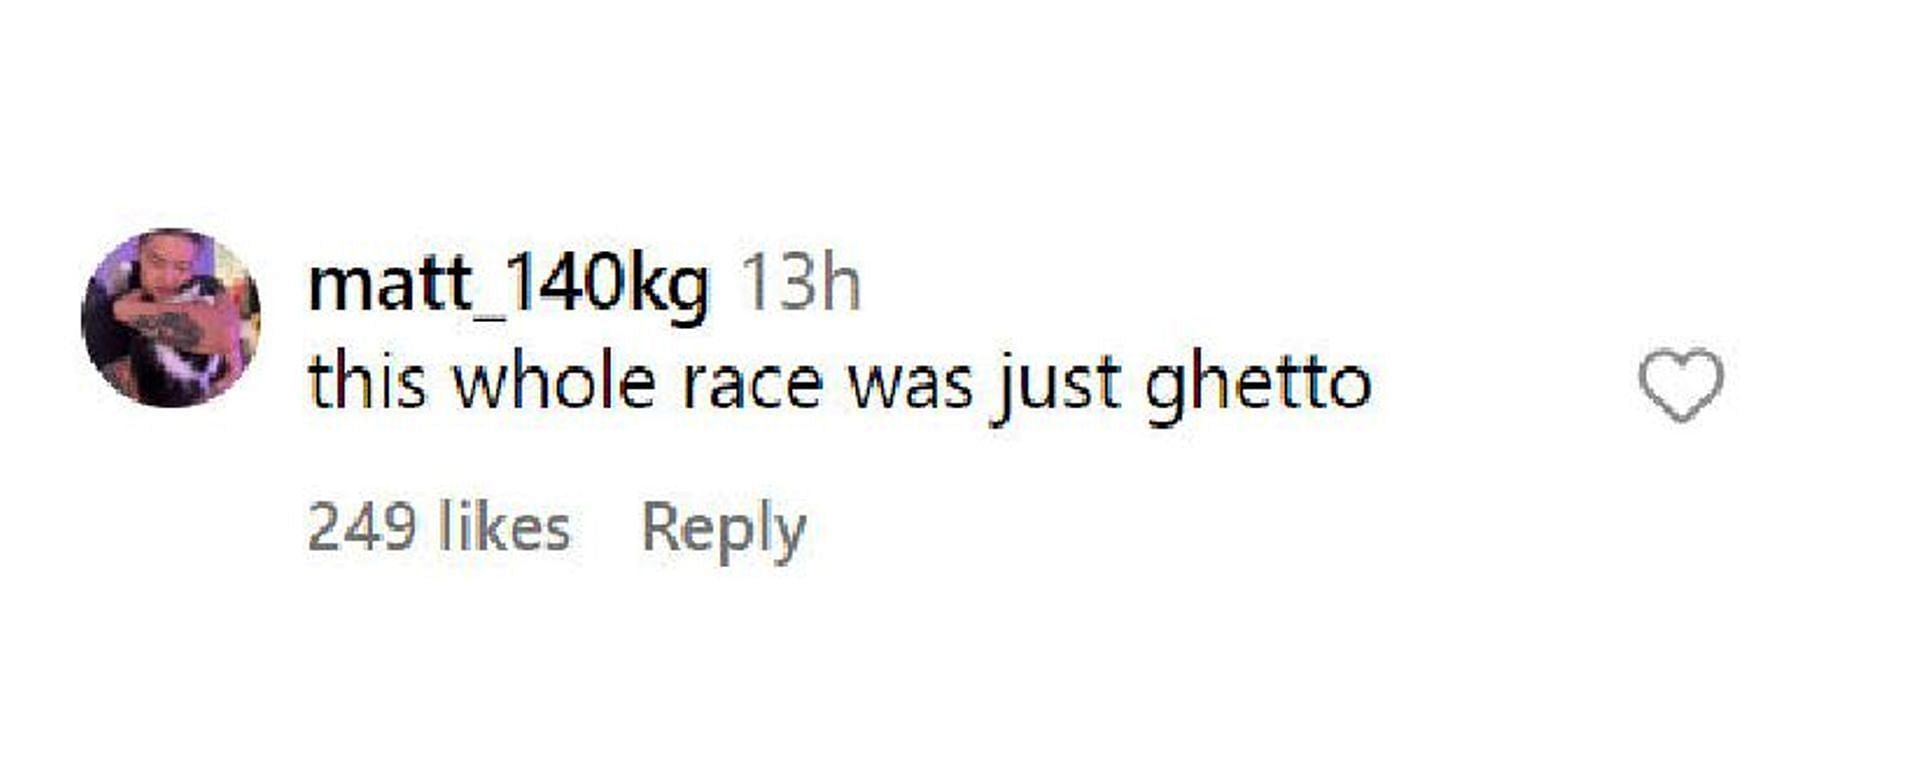 A fan felt the race was poor.